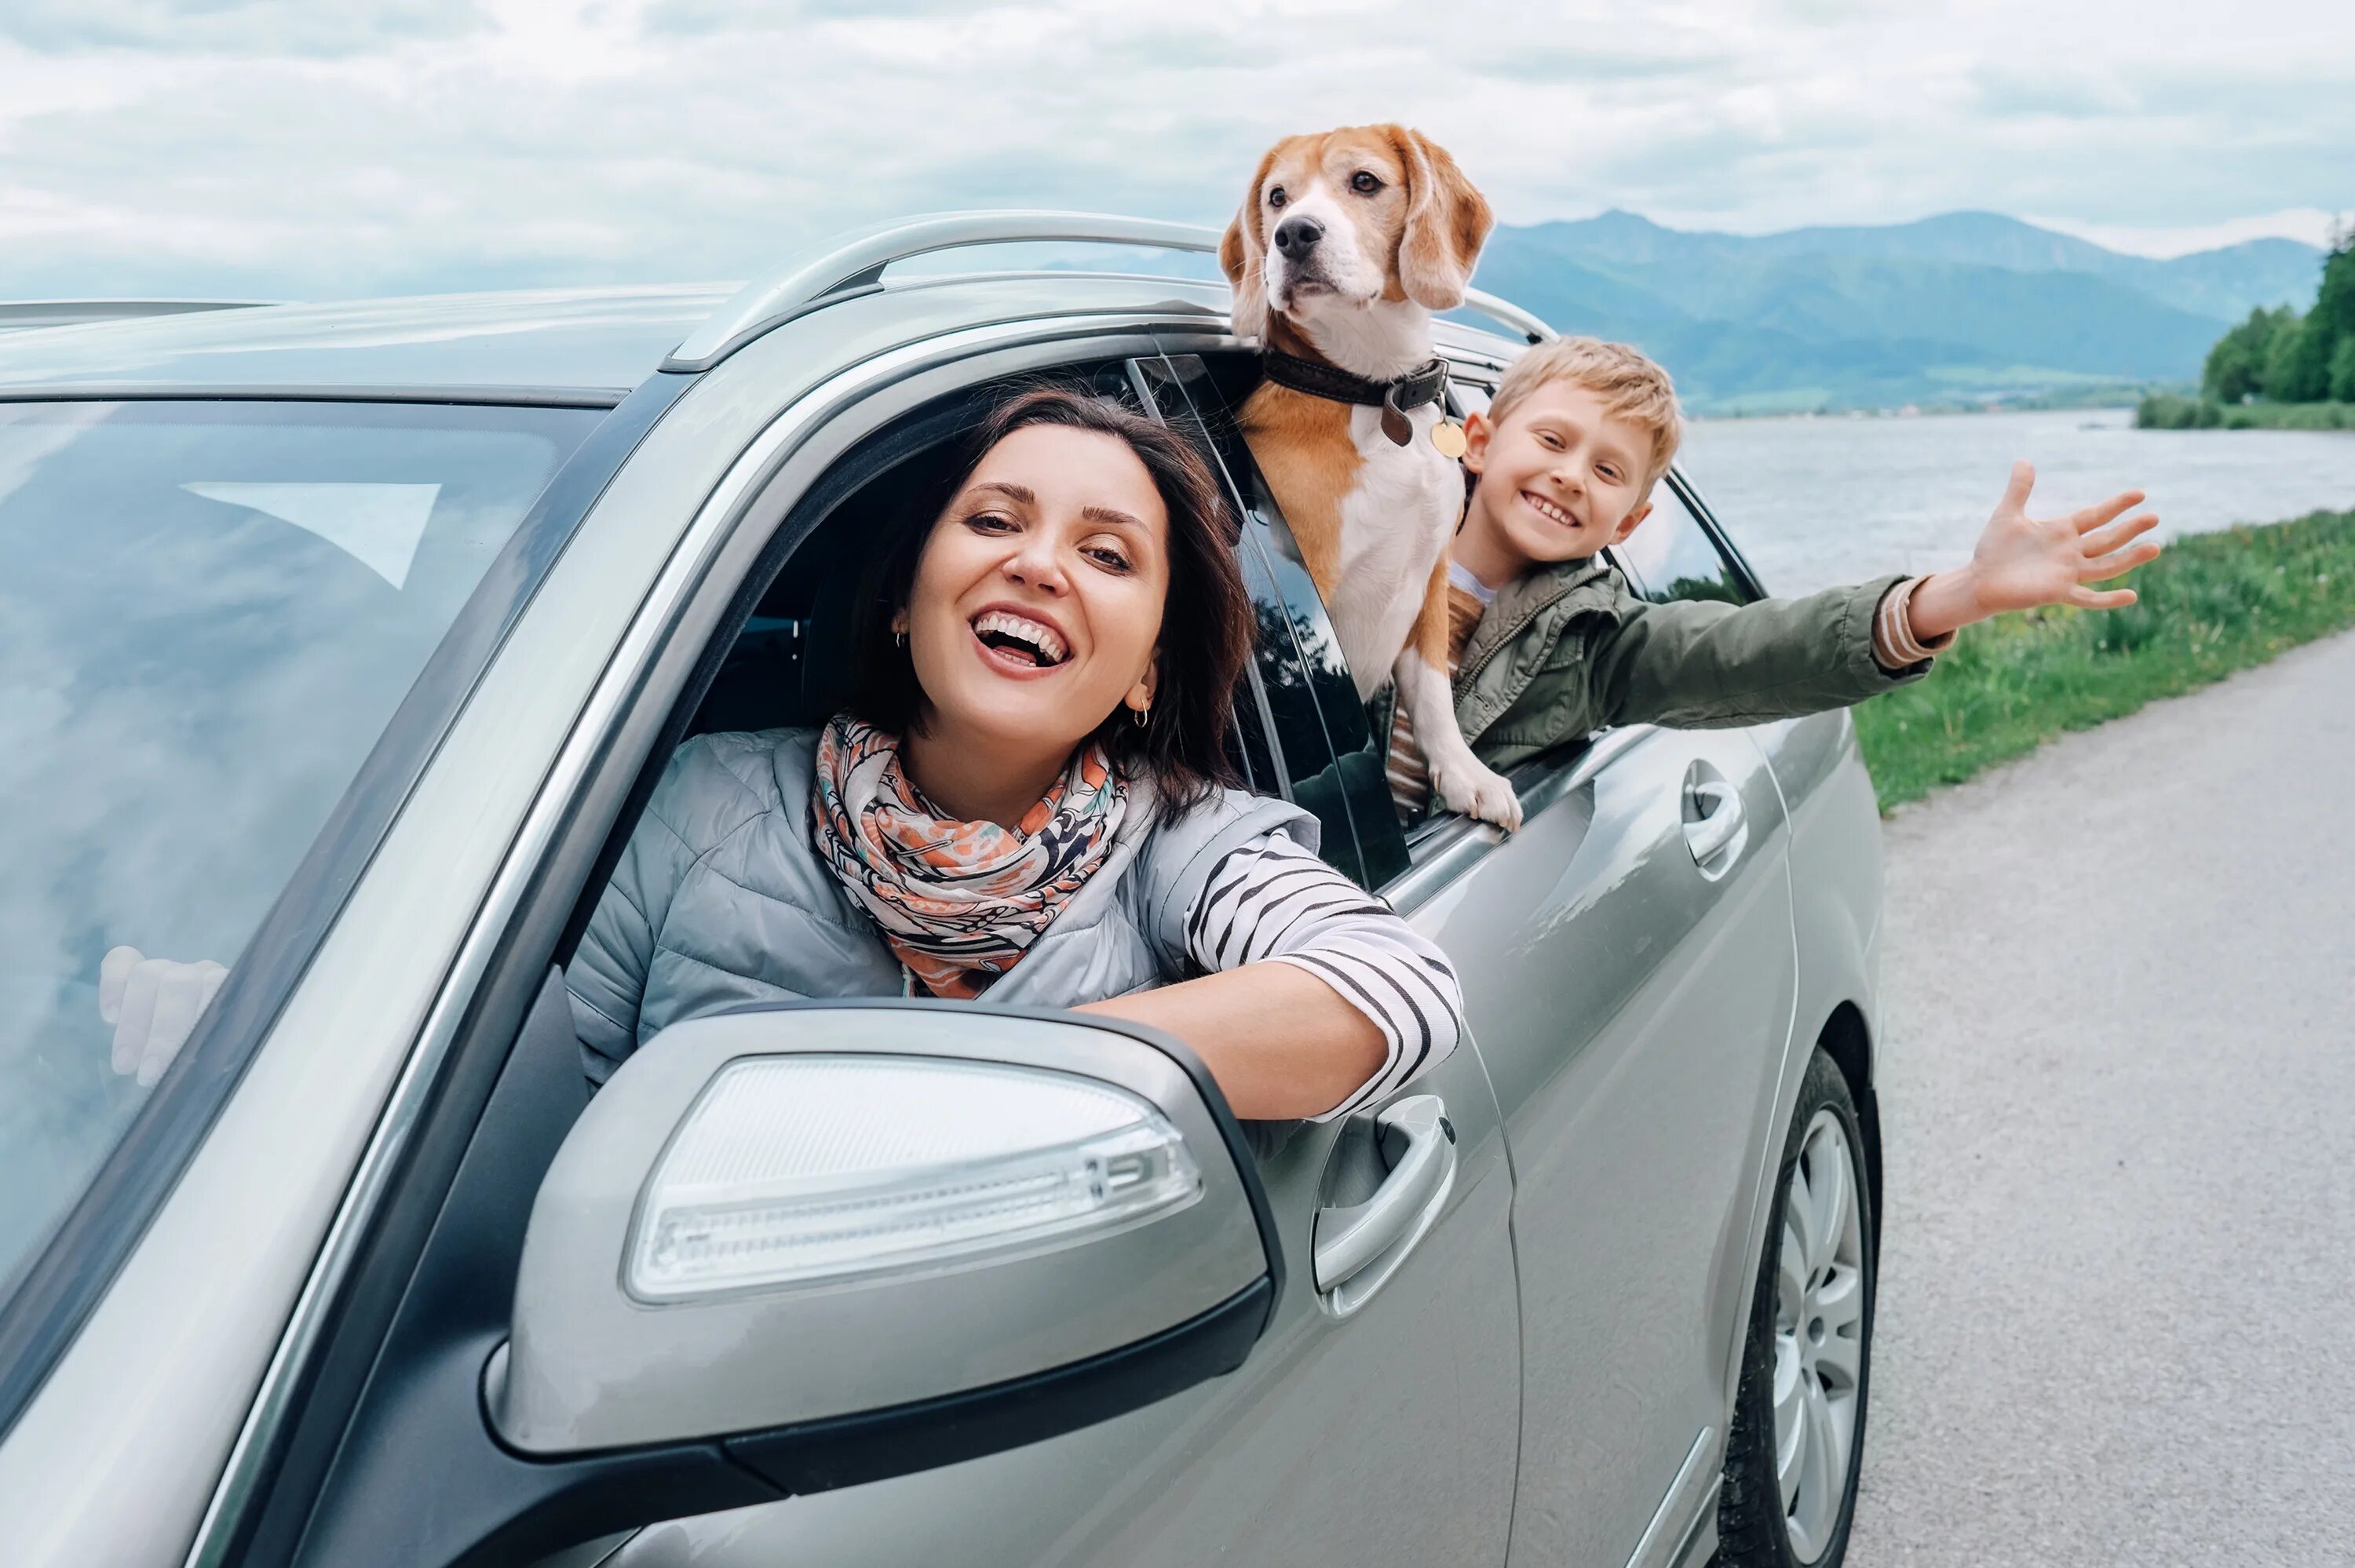 Френдли тур. Путешествие на автомобиле. Семья в машине. Машина для путешествий семьей. Счастливая семья на автомобиле.